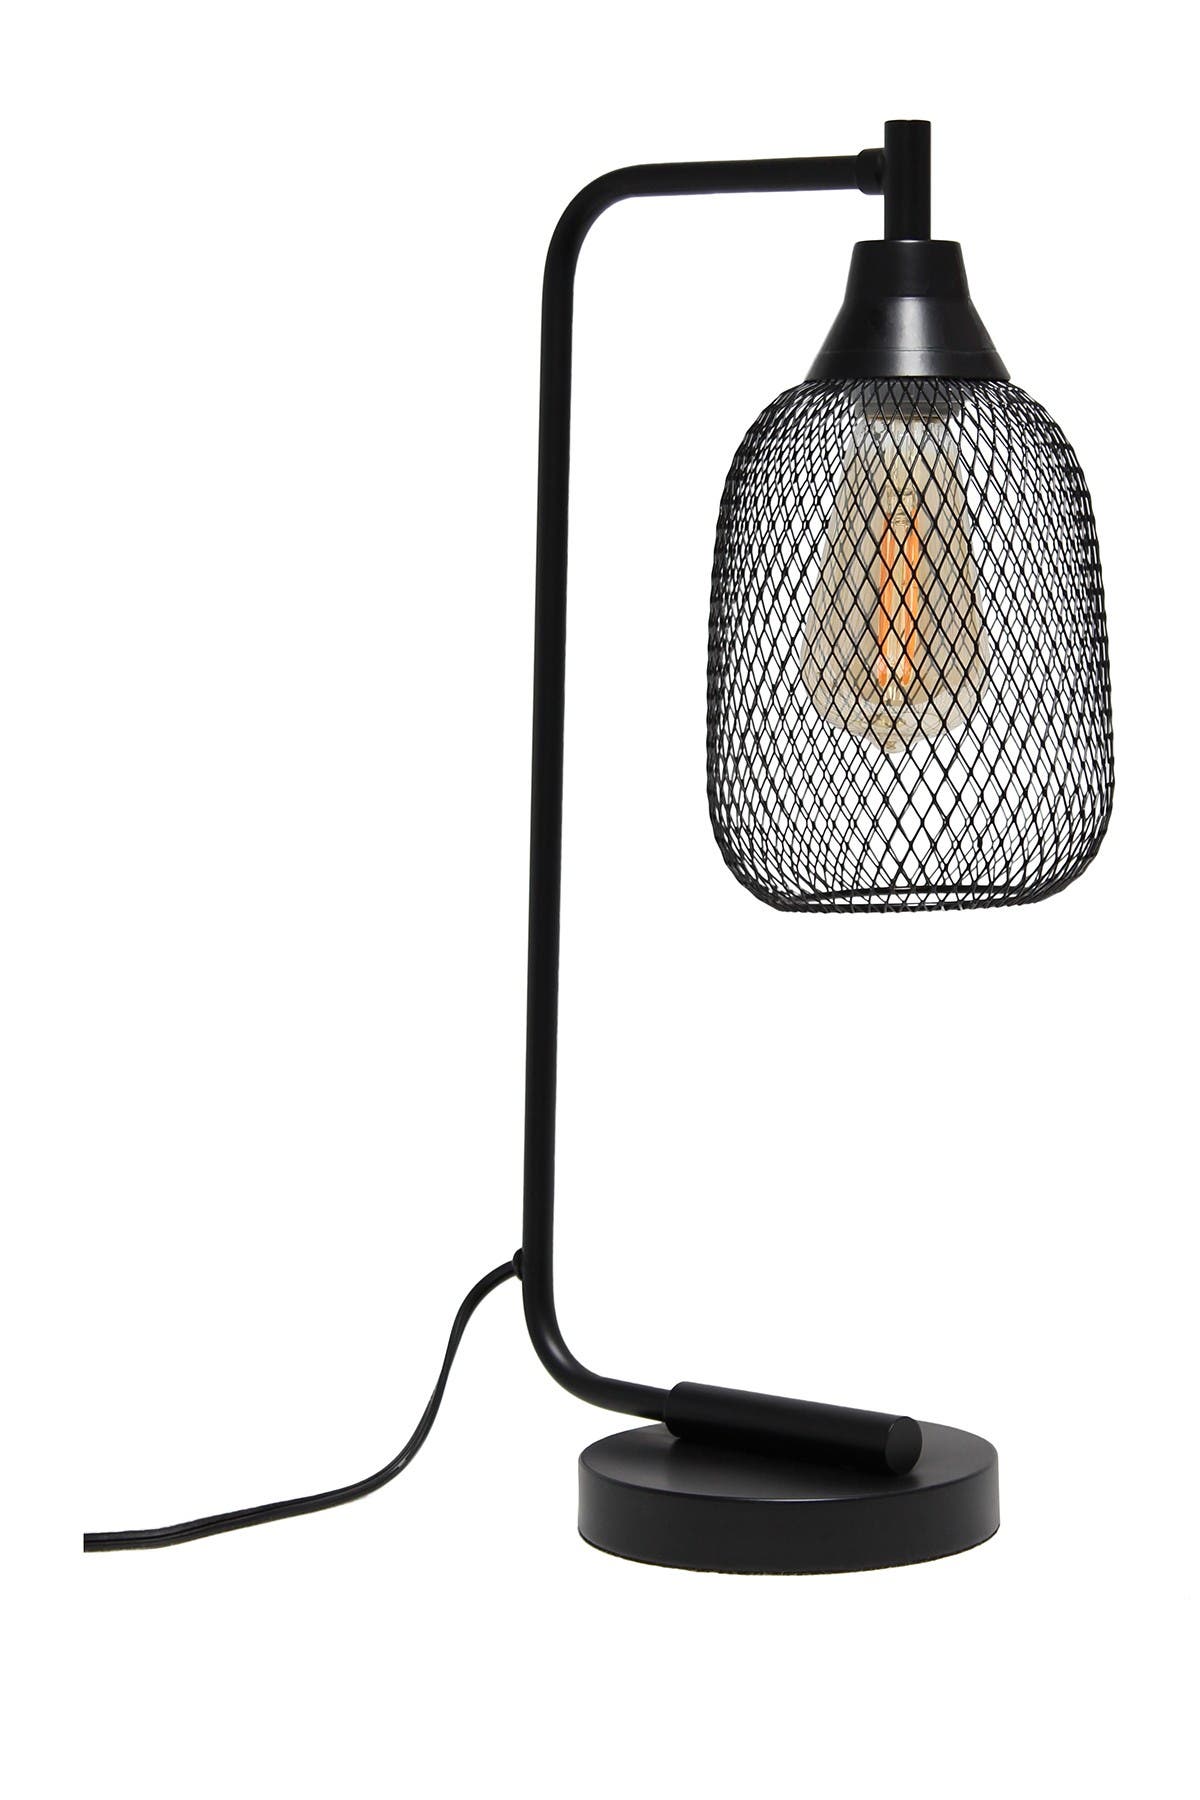 Lalia Home Industrial Mesh Desk Lamp In Black